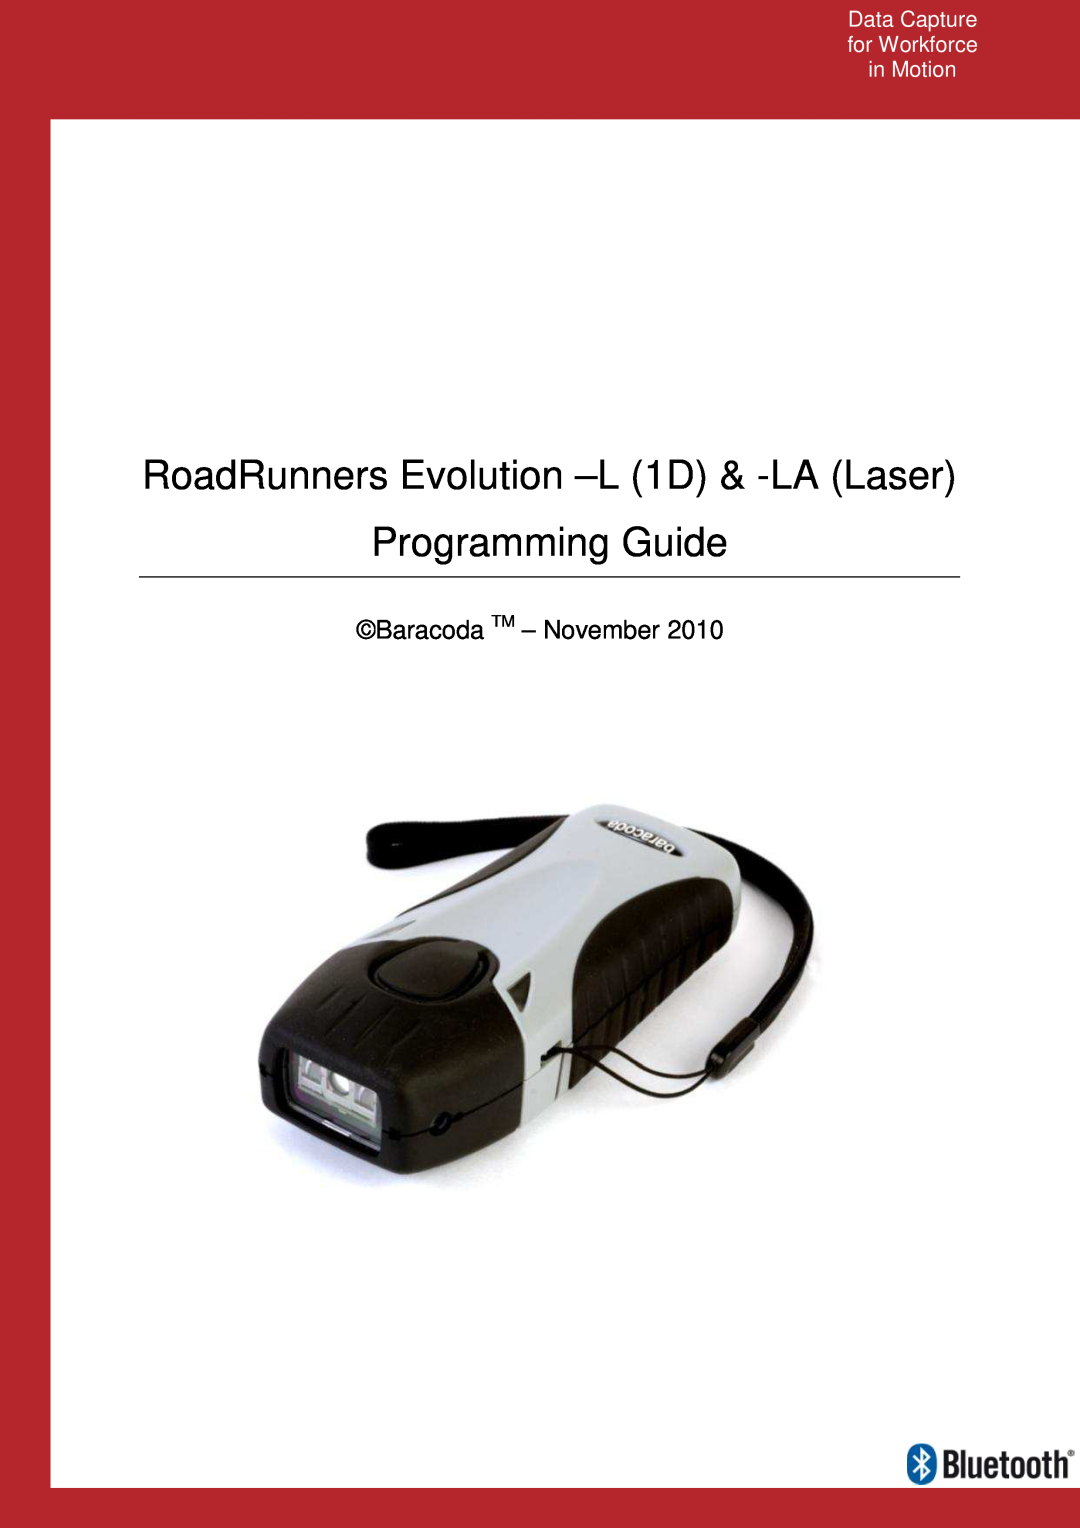 Baracoda L (1D) manual Data Capture for Workforce in Motion, RoadRunners Evolution -L 1D & -LA Laser Programming Guide 